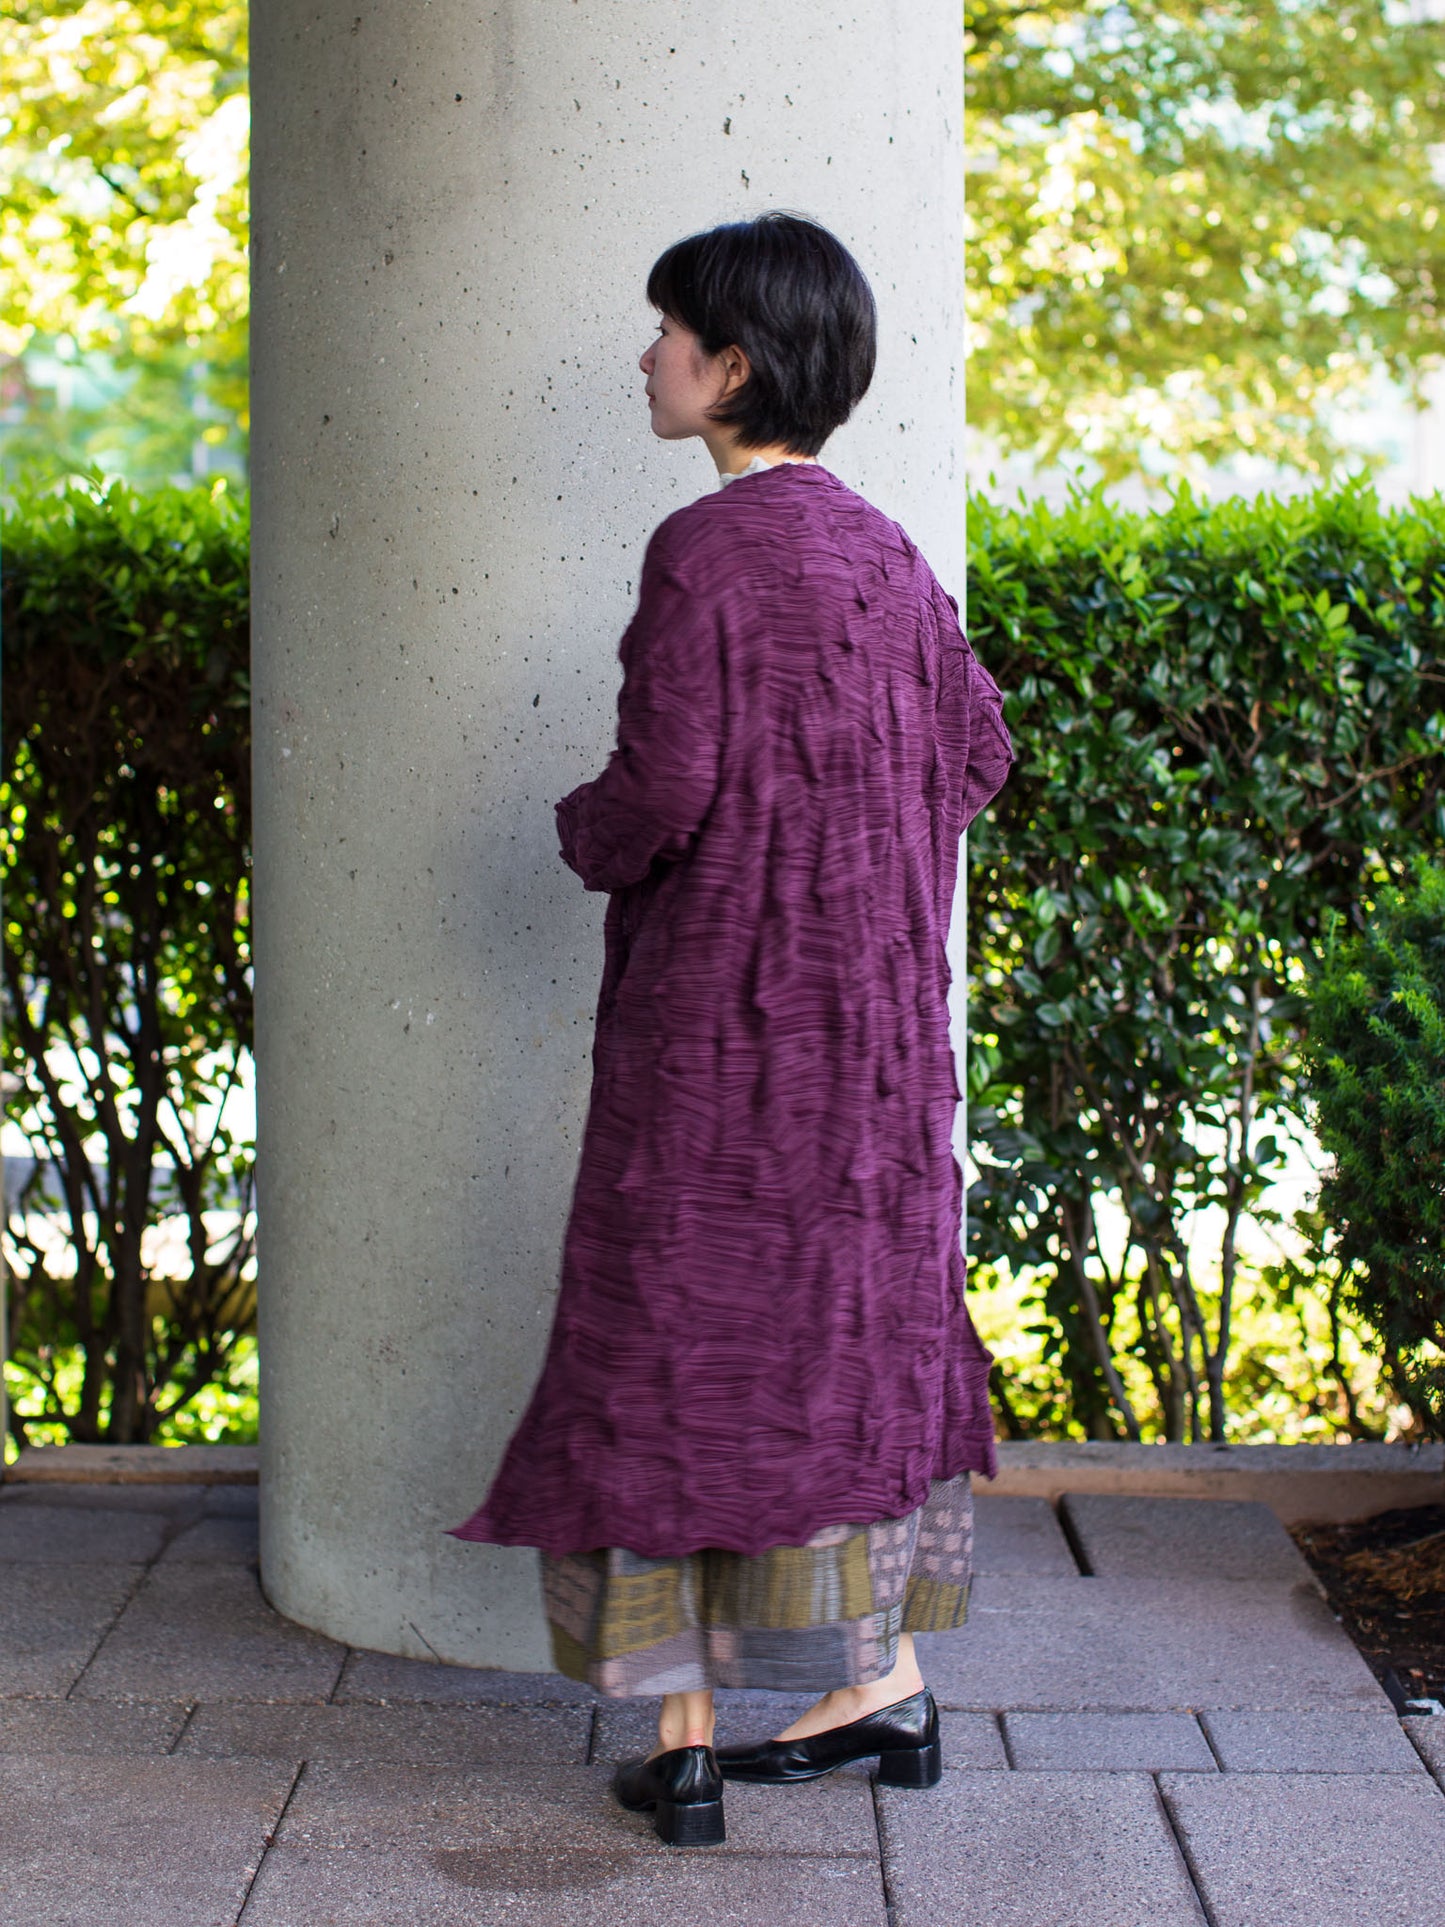 [50% off] Fuga Fuga Knitted Cardigan - Purple - 7449